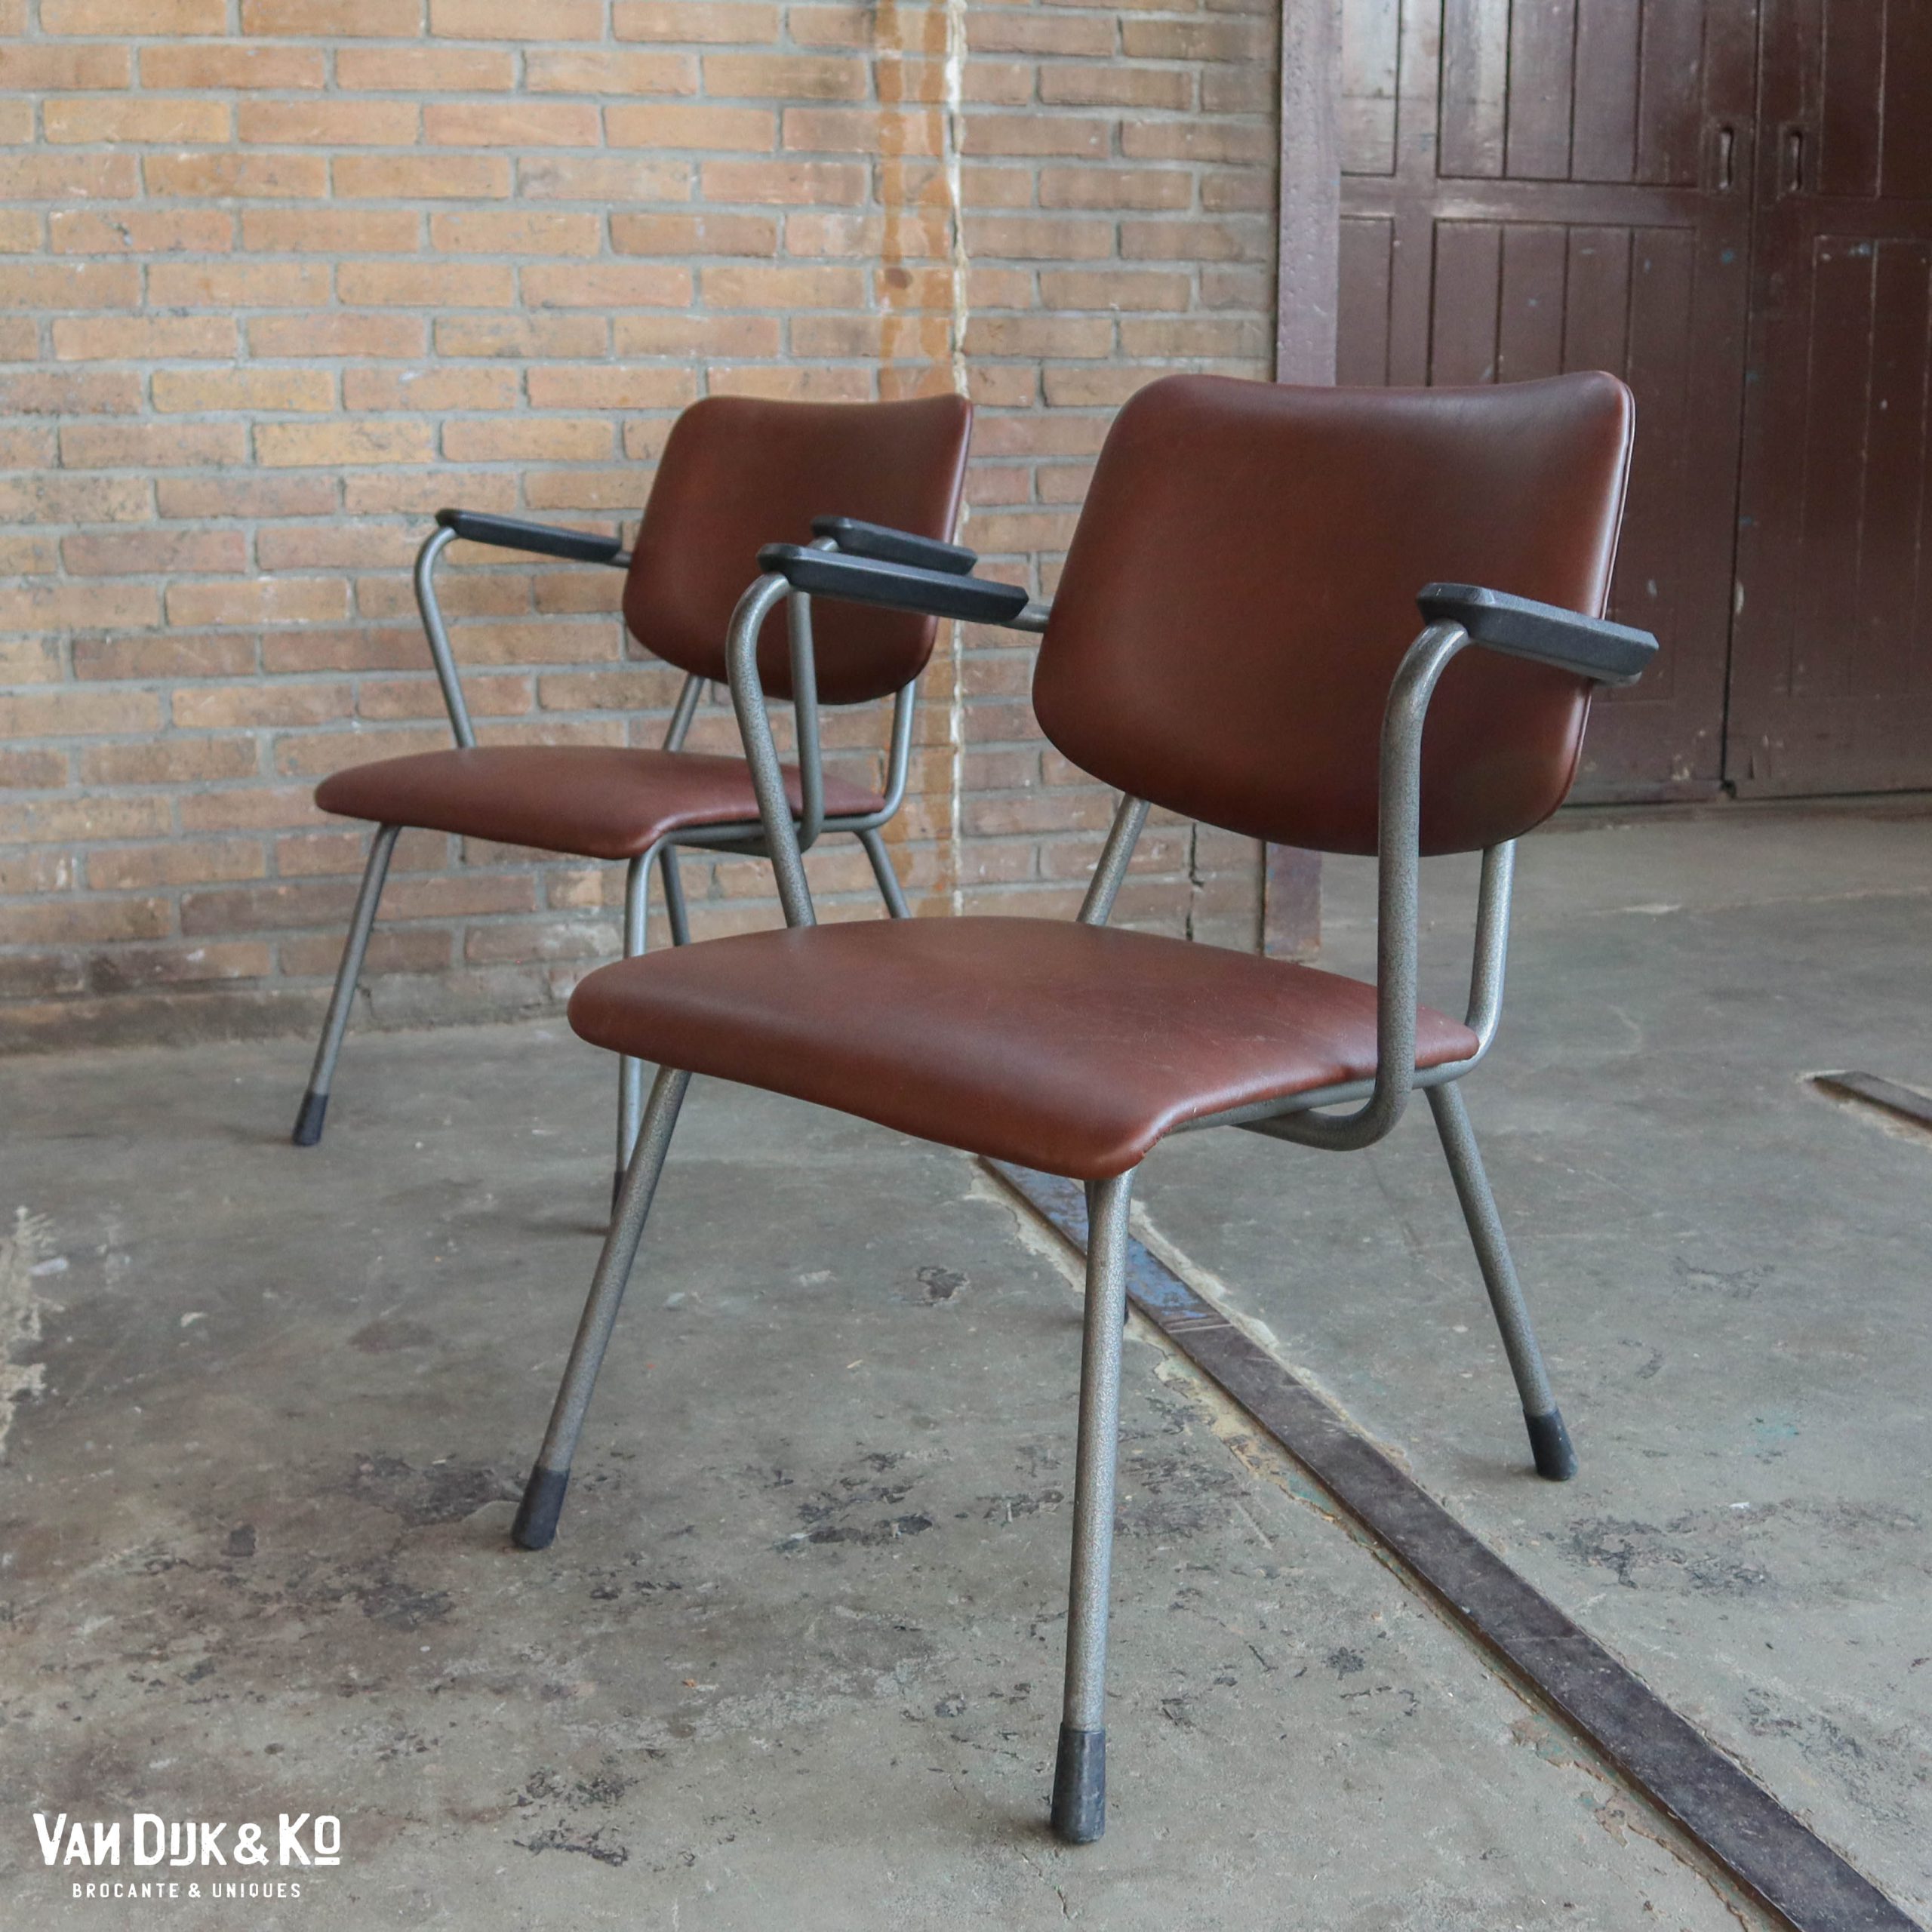 Bewust worden eenzaam alleen Vintage design stoel – Gispen » Van Dijk & Ko